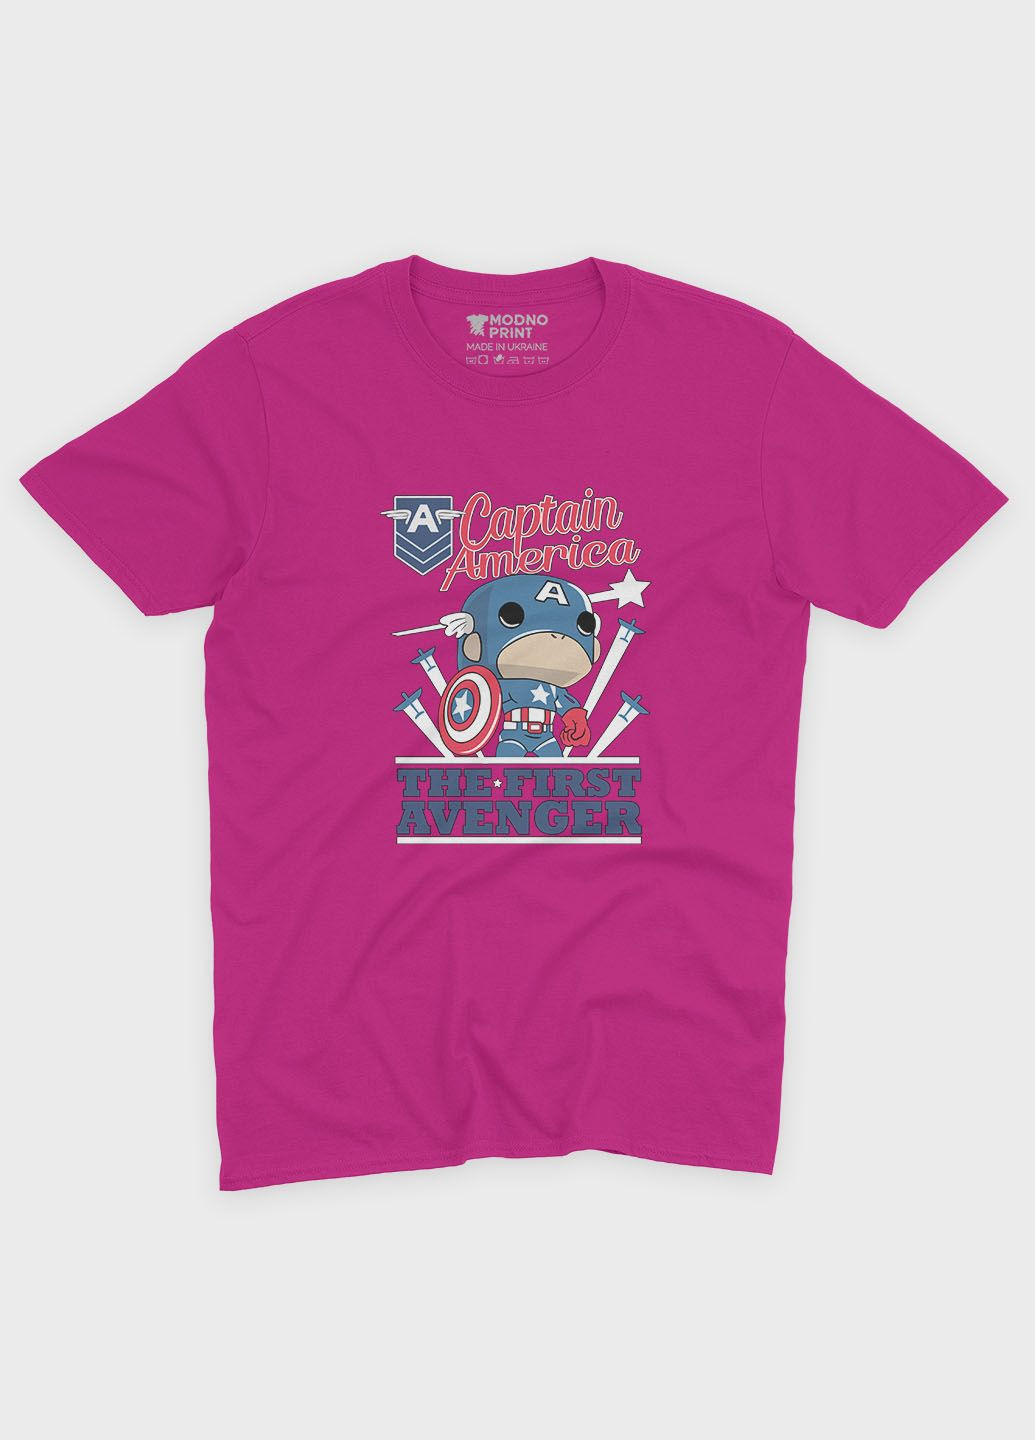 Рожева демісезонна футболка для хлопчика з принтом супергероя - капітан америка (ts001-1-fuxj-006-022-004-b) Modno